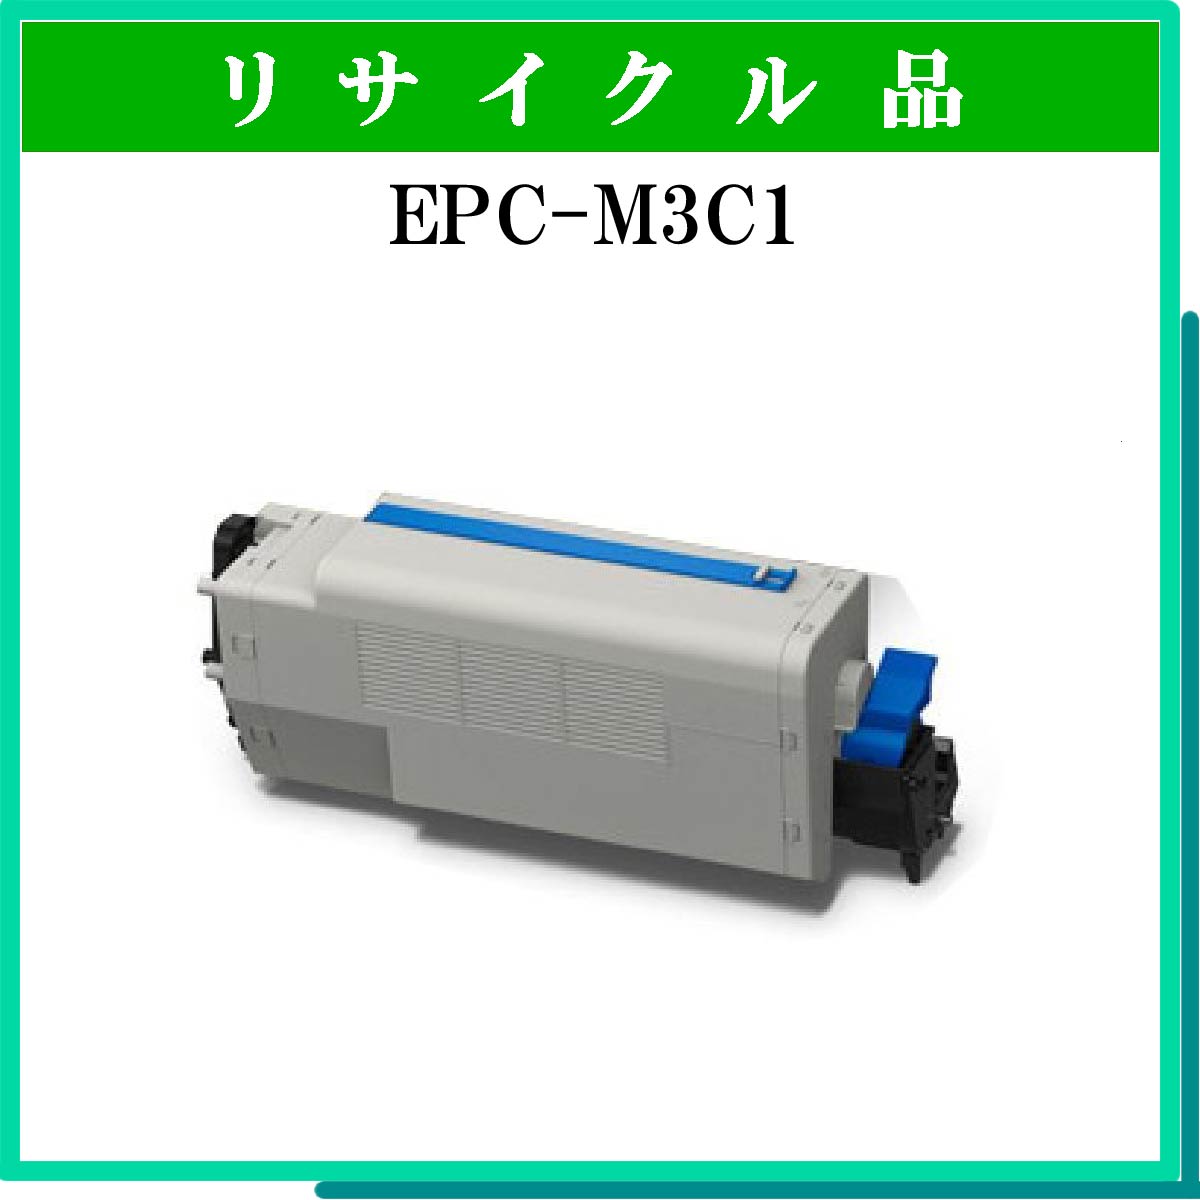 EPC-M3C1 (中容量)